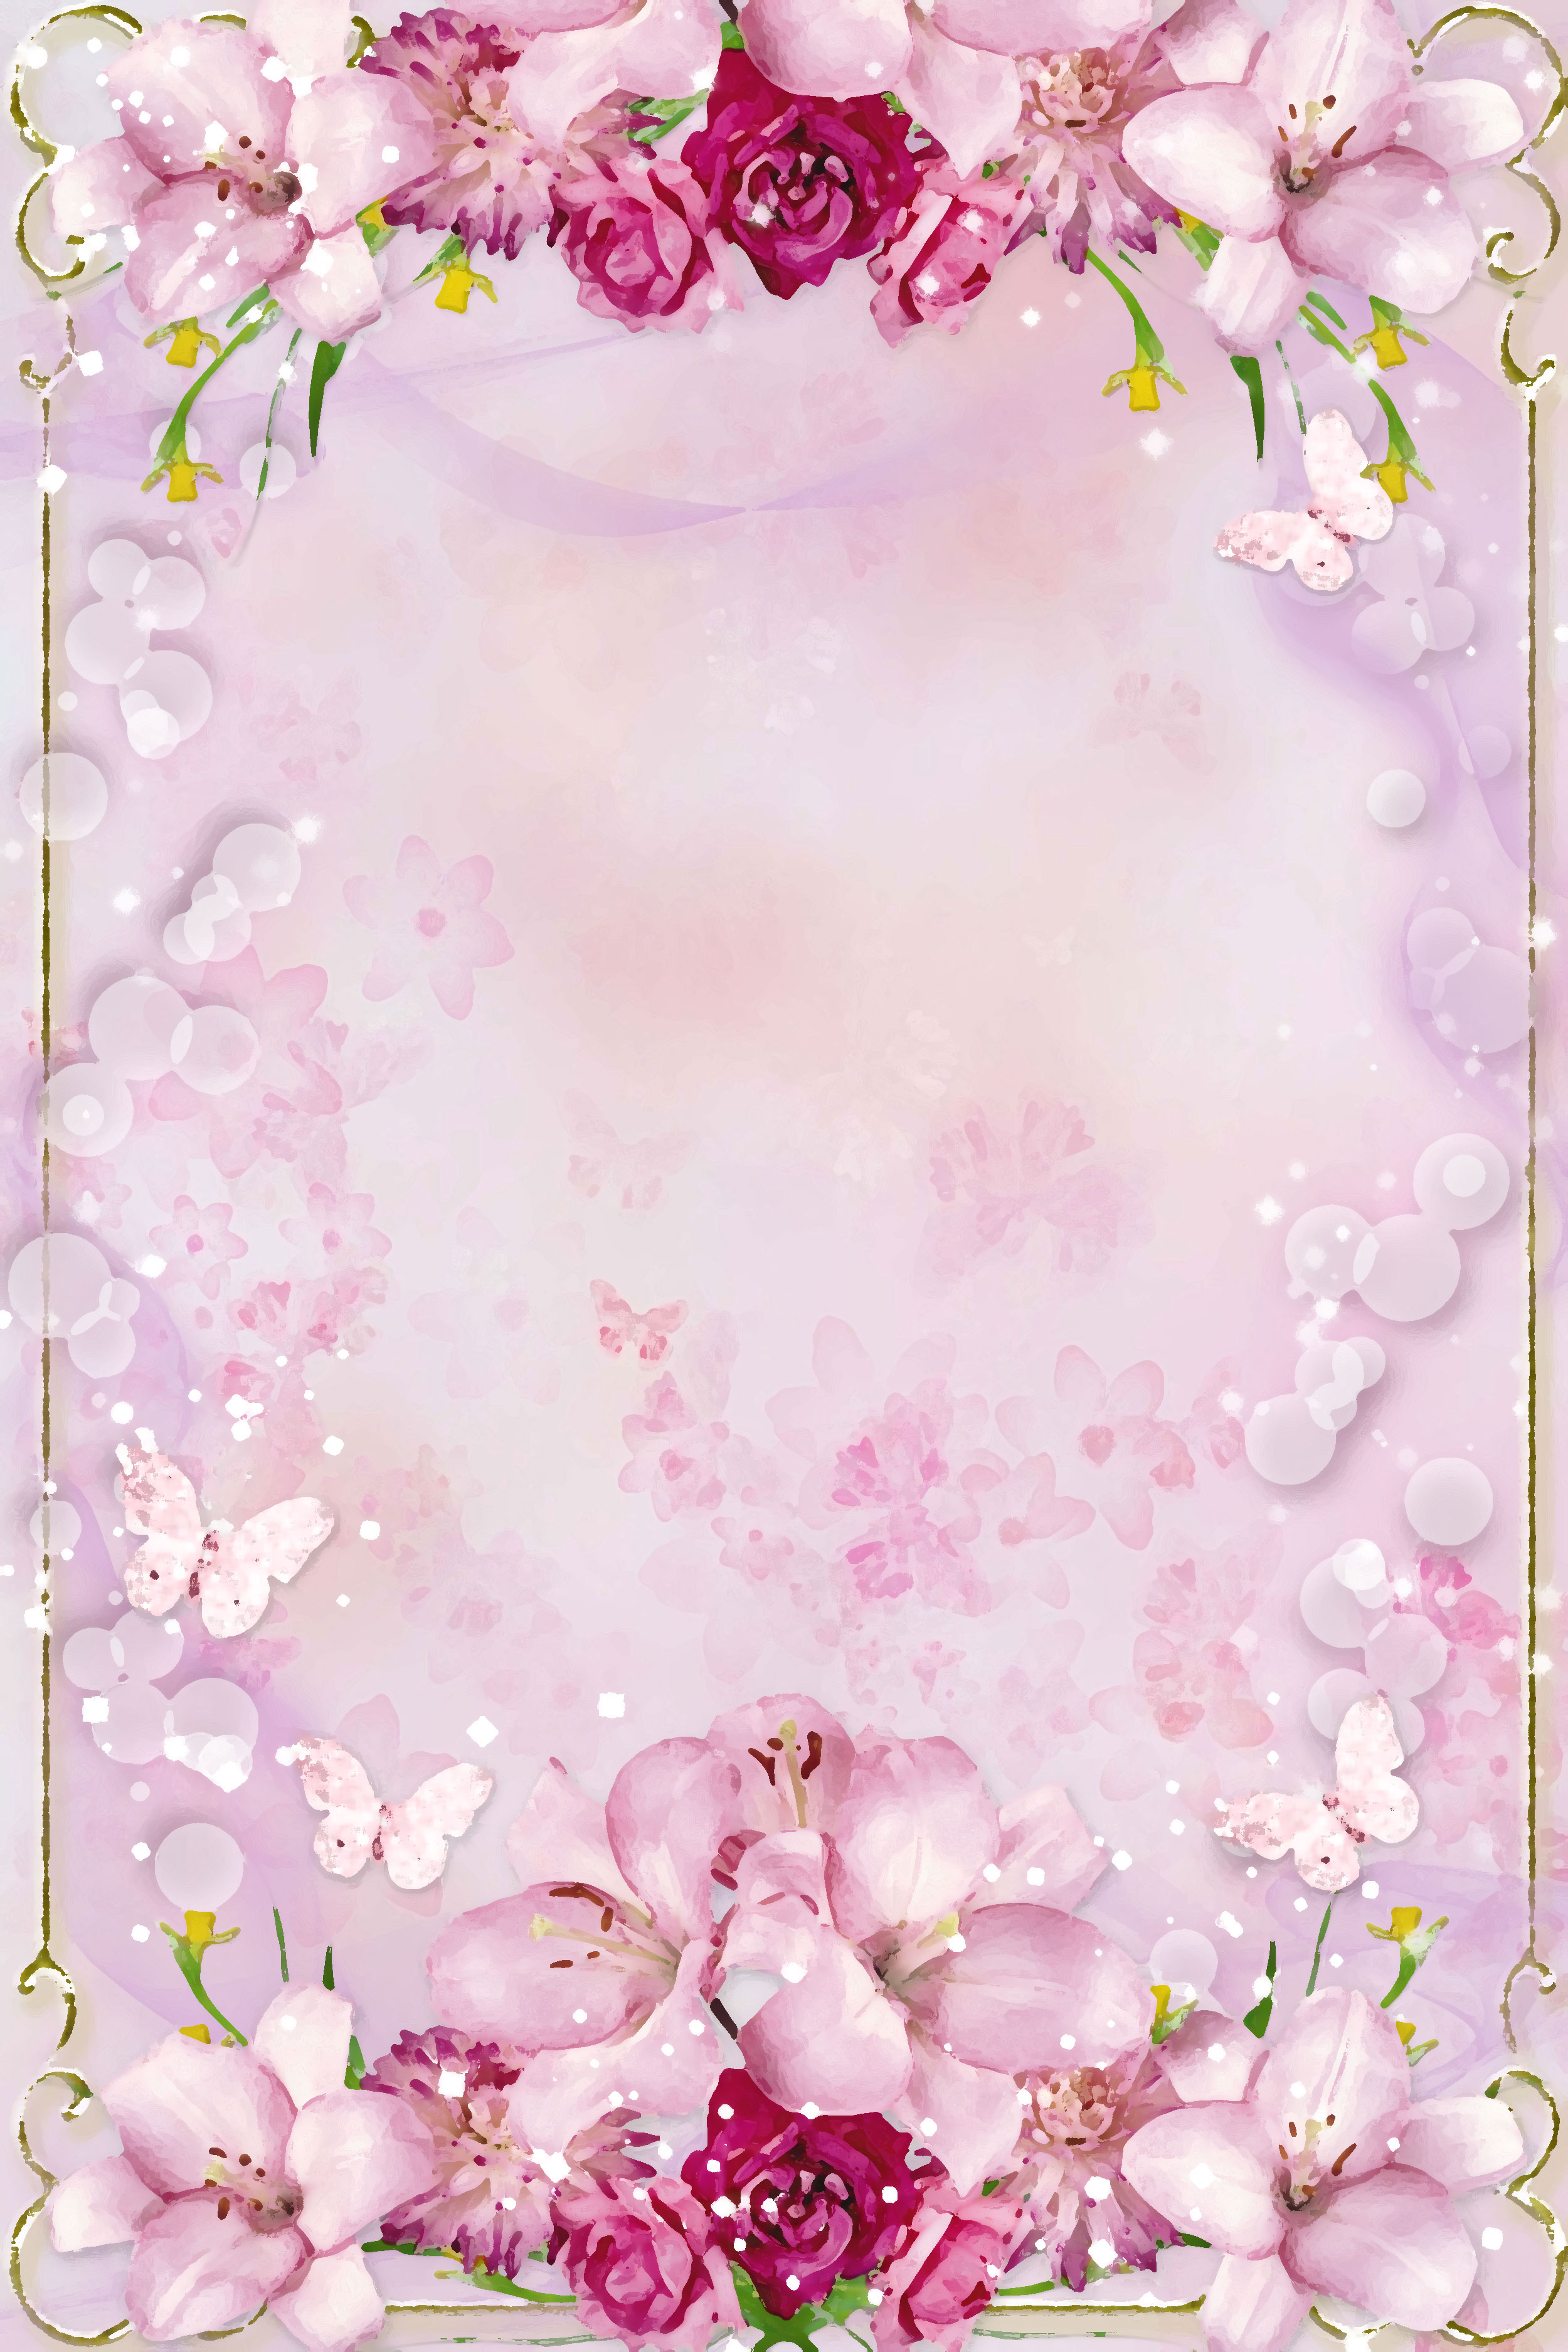 壁紙 背景イラスト 花のフレーム 外枠 No 064 ピンク 赤紫 蝶 光粒